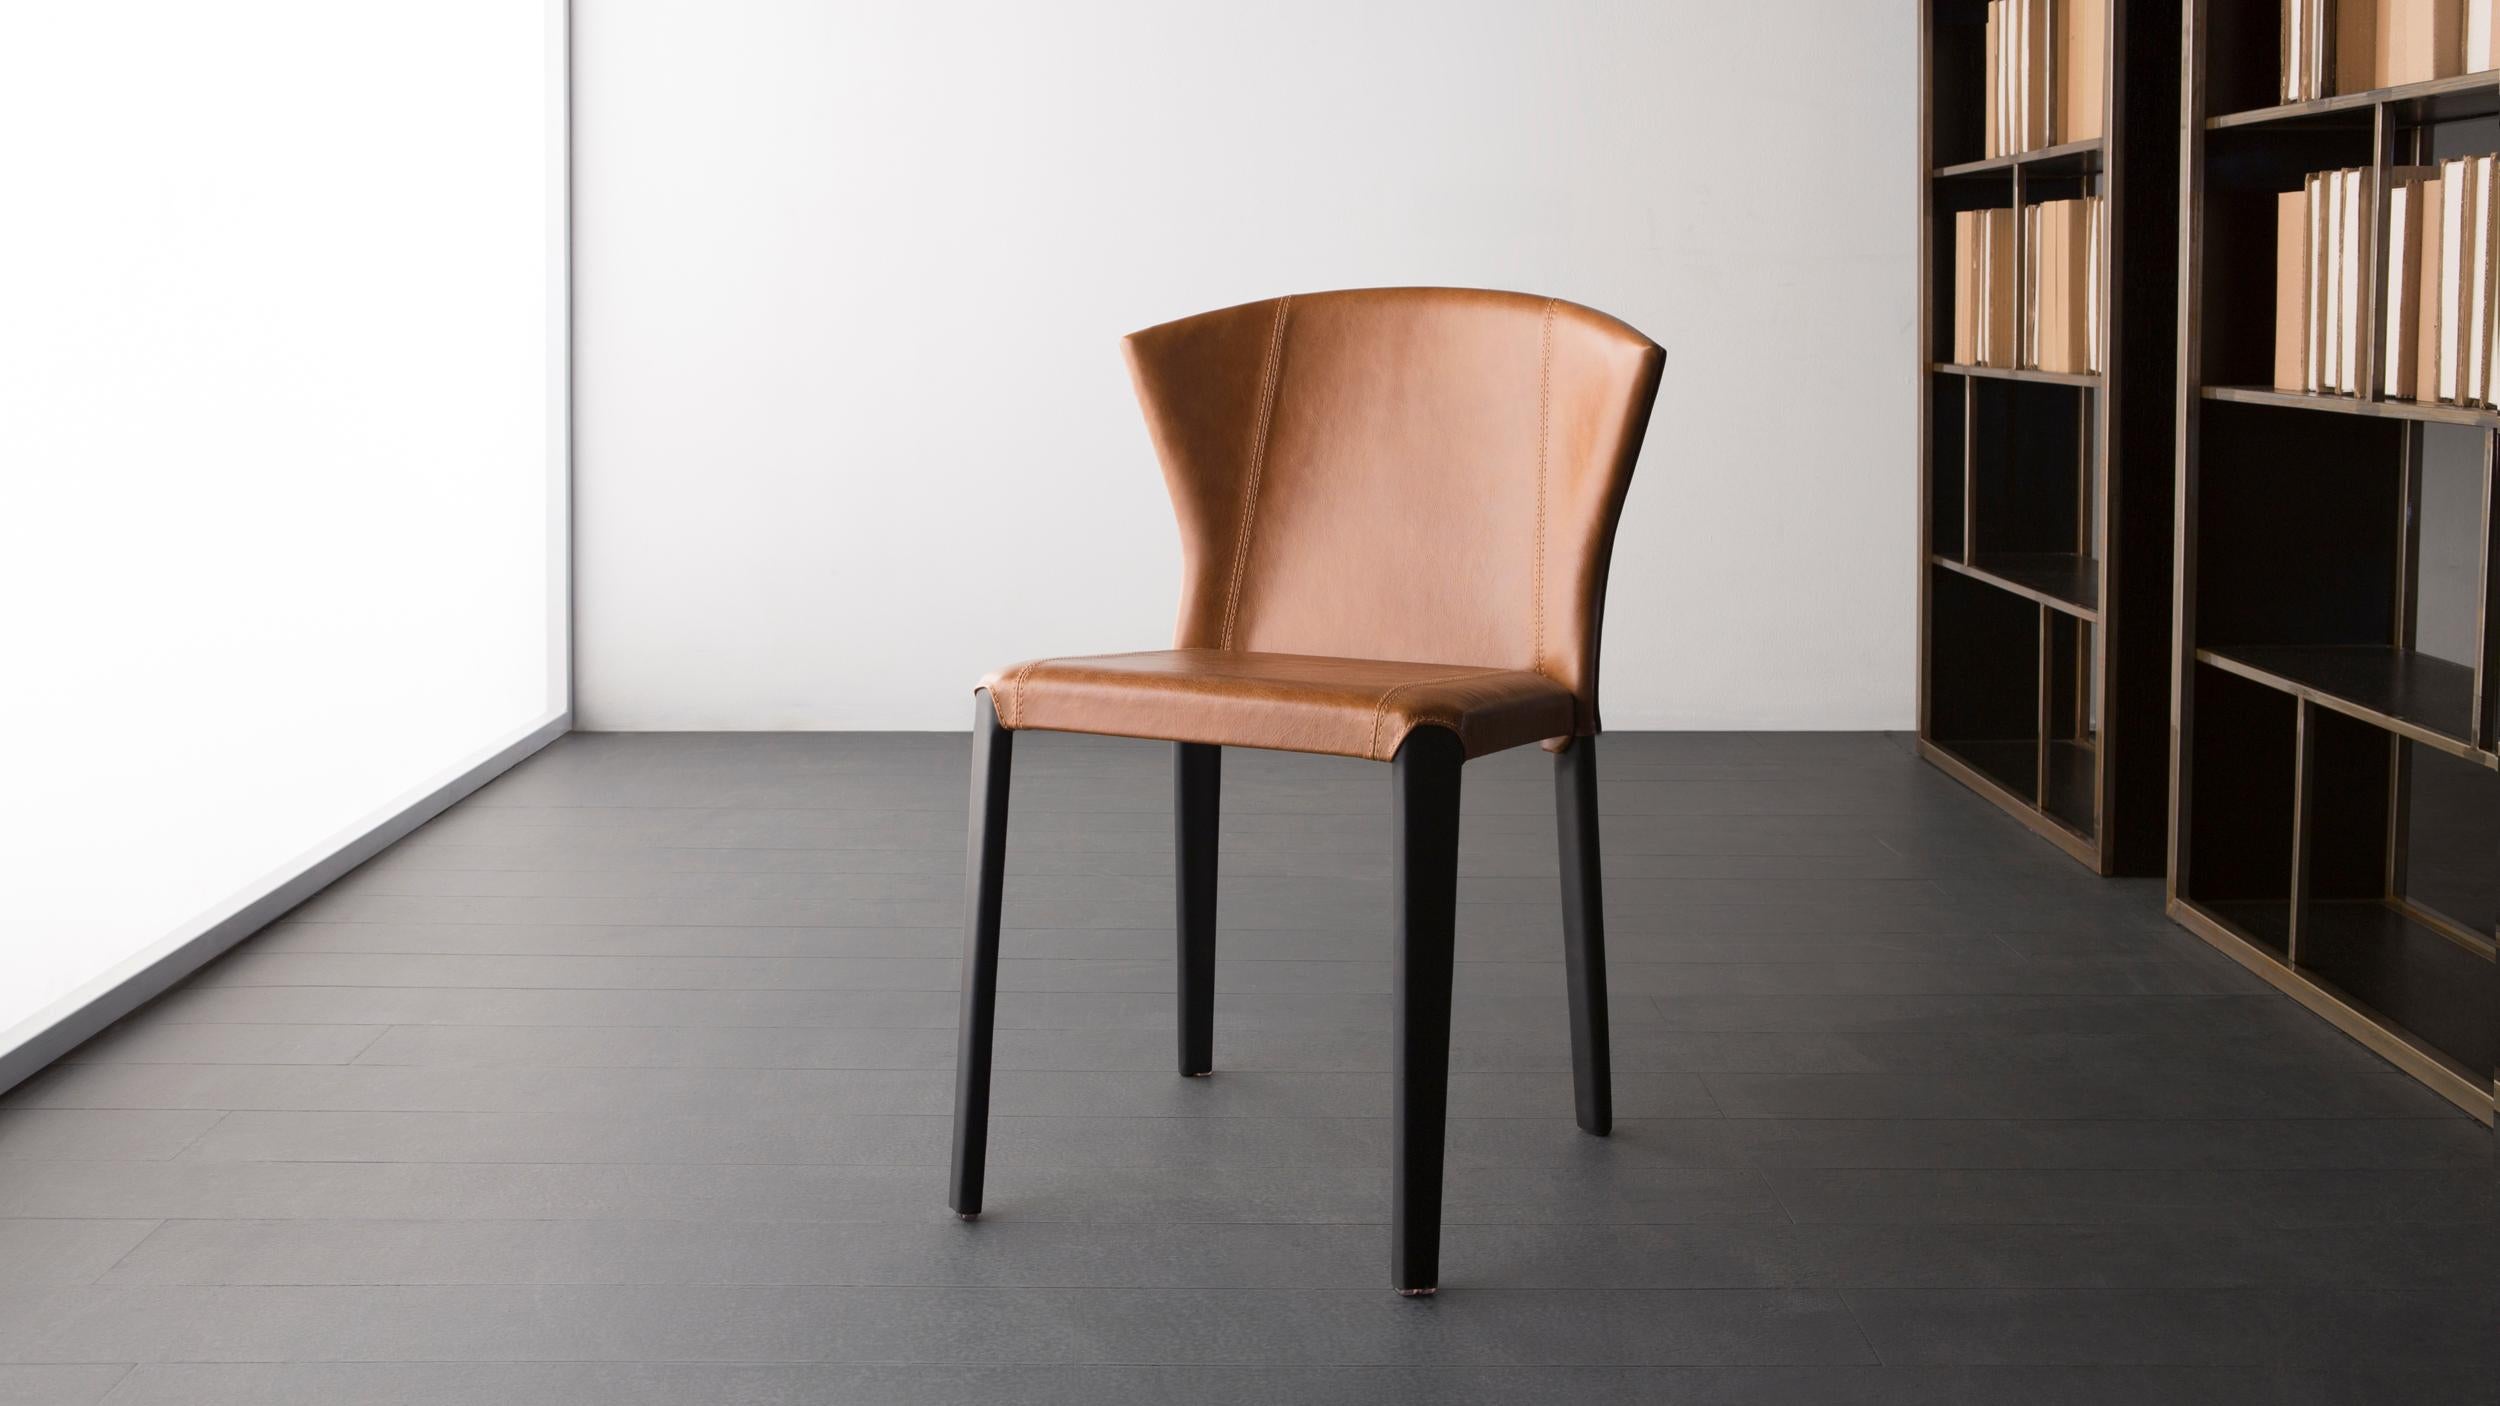 Tork-Stuhl von Doimo Brasil
Abmessungen: B 51 x T 58 x H 81 cm 
MATERIALIEN: Metall, Leder.


Mit der Absicht, guten Geschmack und Persönlichkeit zu vermitteln, entschlüsselt Doimo Trends und folgt der Entwicklung des Menschen und seines Raums. Zu